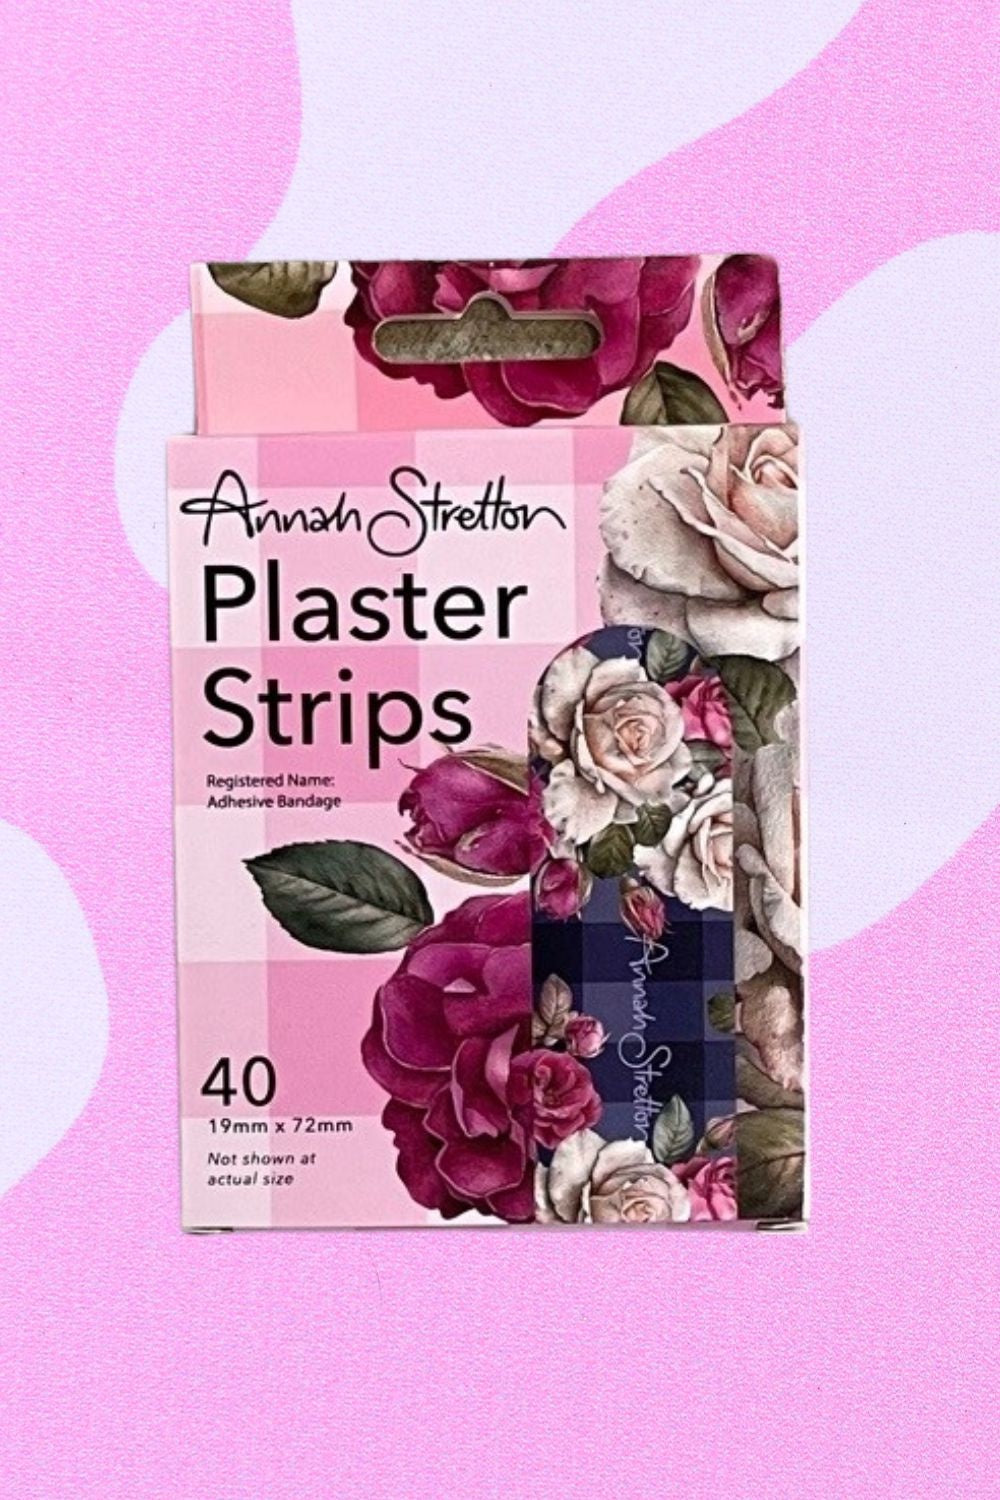 Annah Stretton Plaster Strips